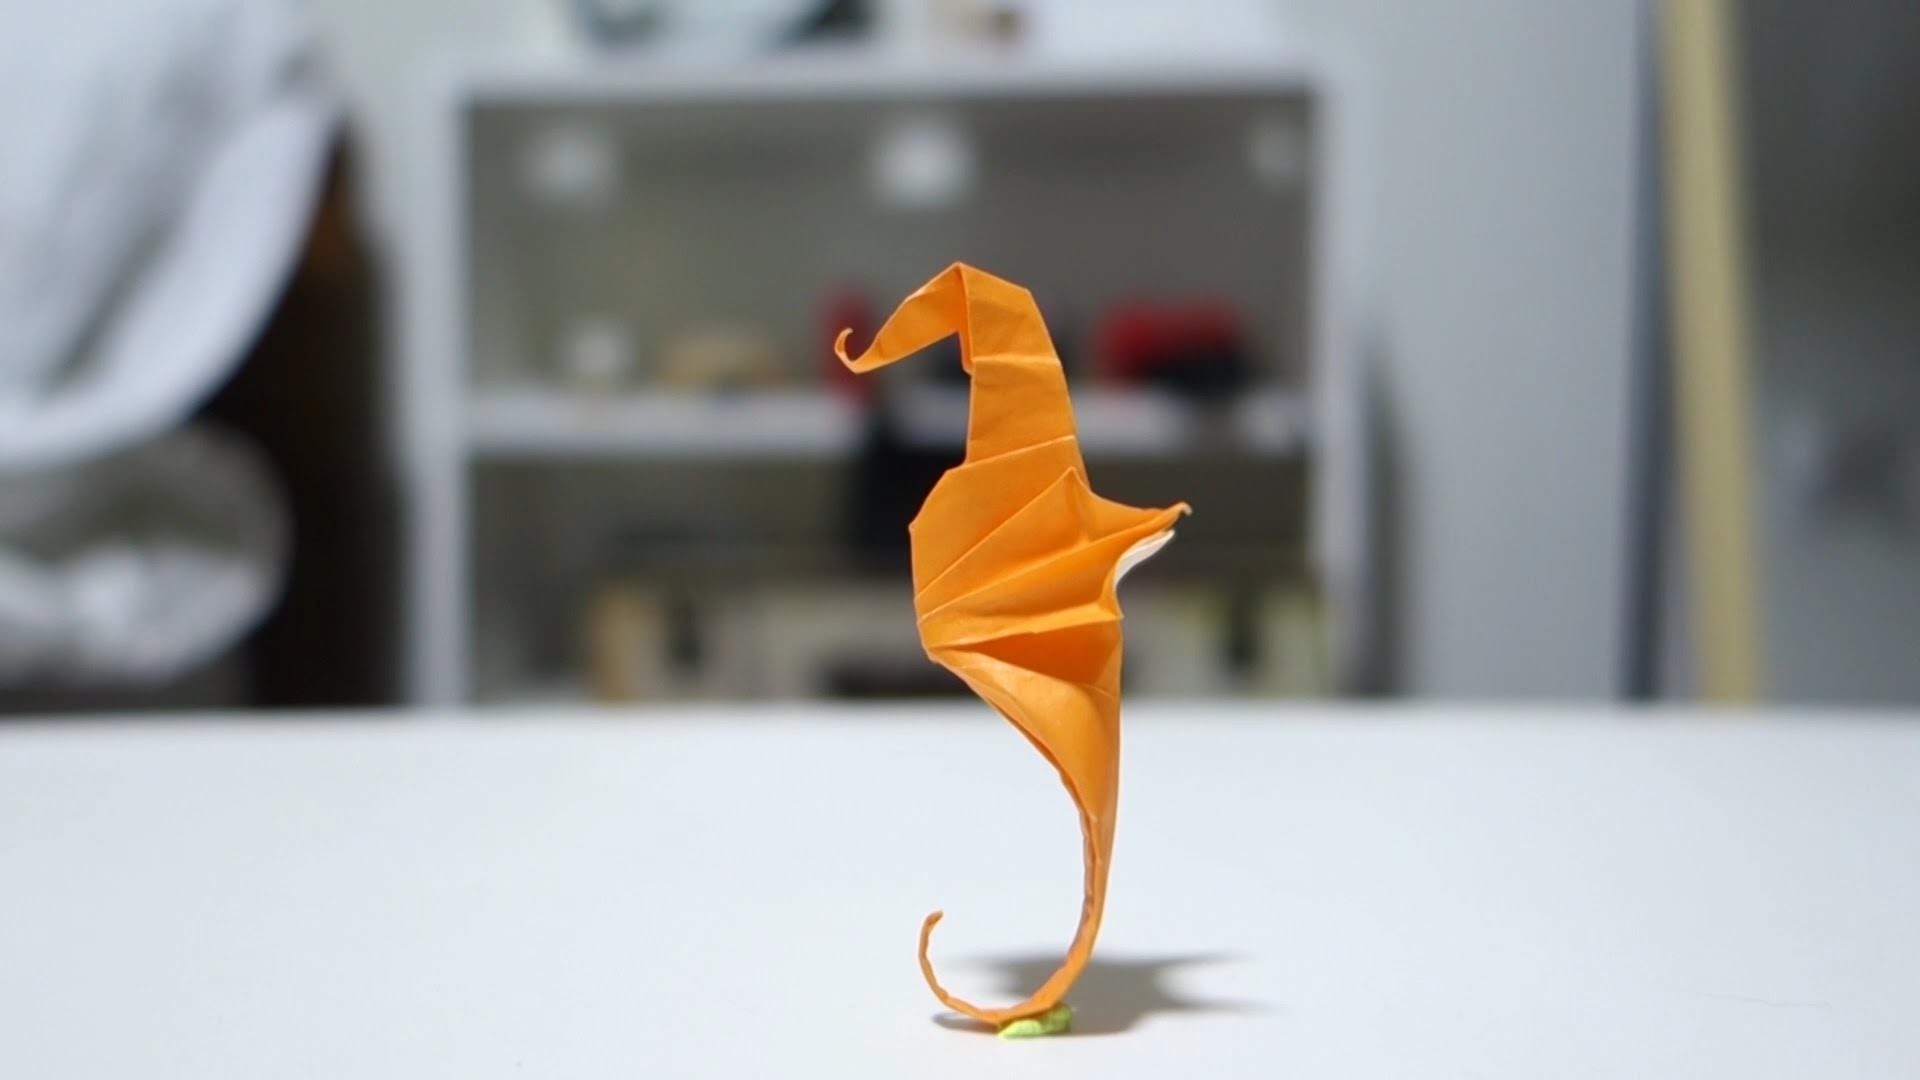 Caballito de Mar de papel - Origami Seahorse